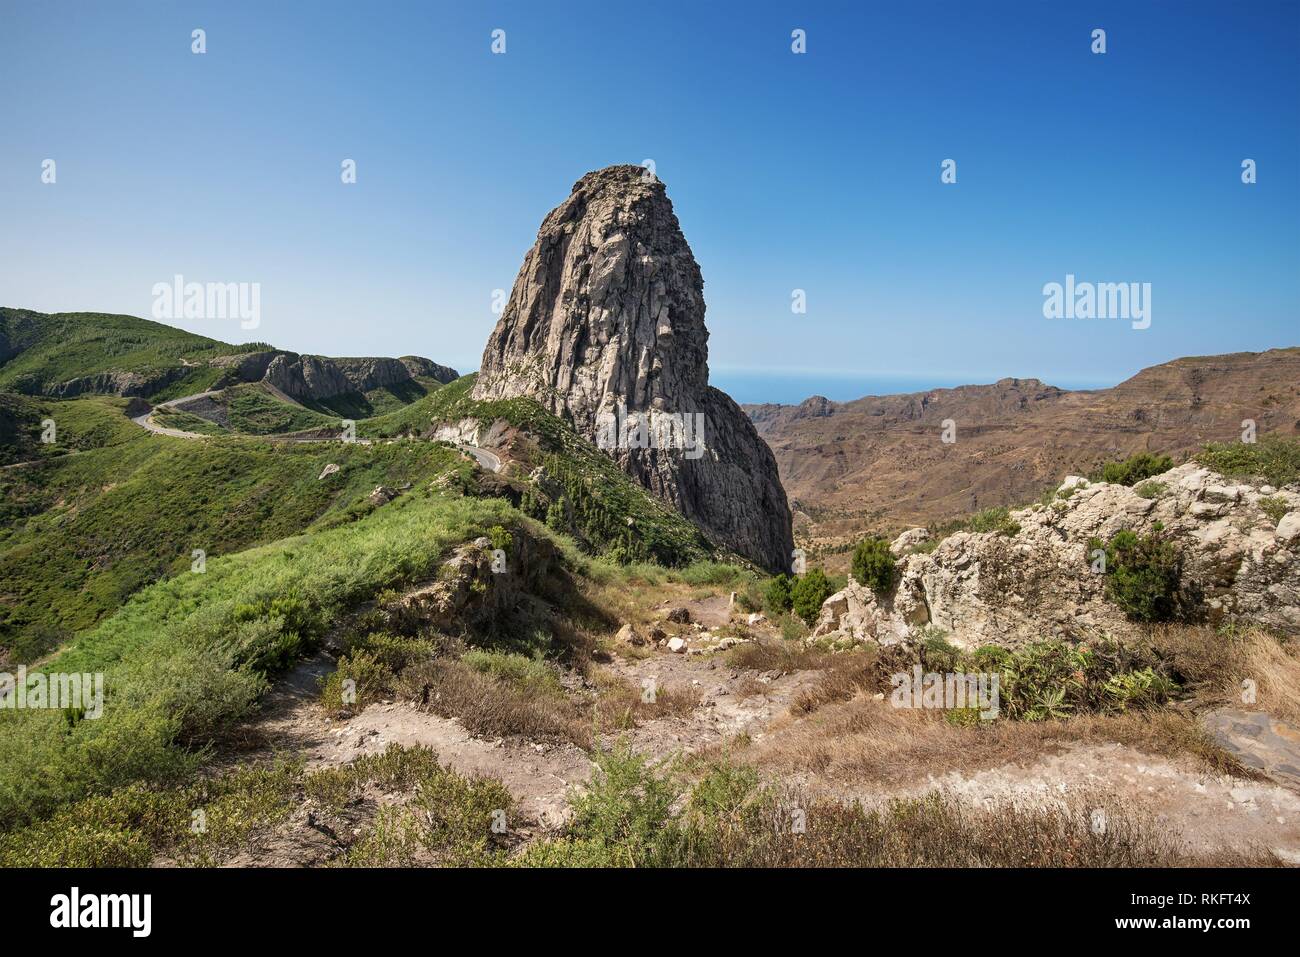 Mountain landscape of Roque Agando in La Gomera, Spain. Stock Photo